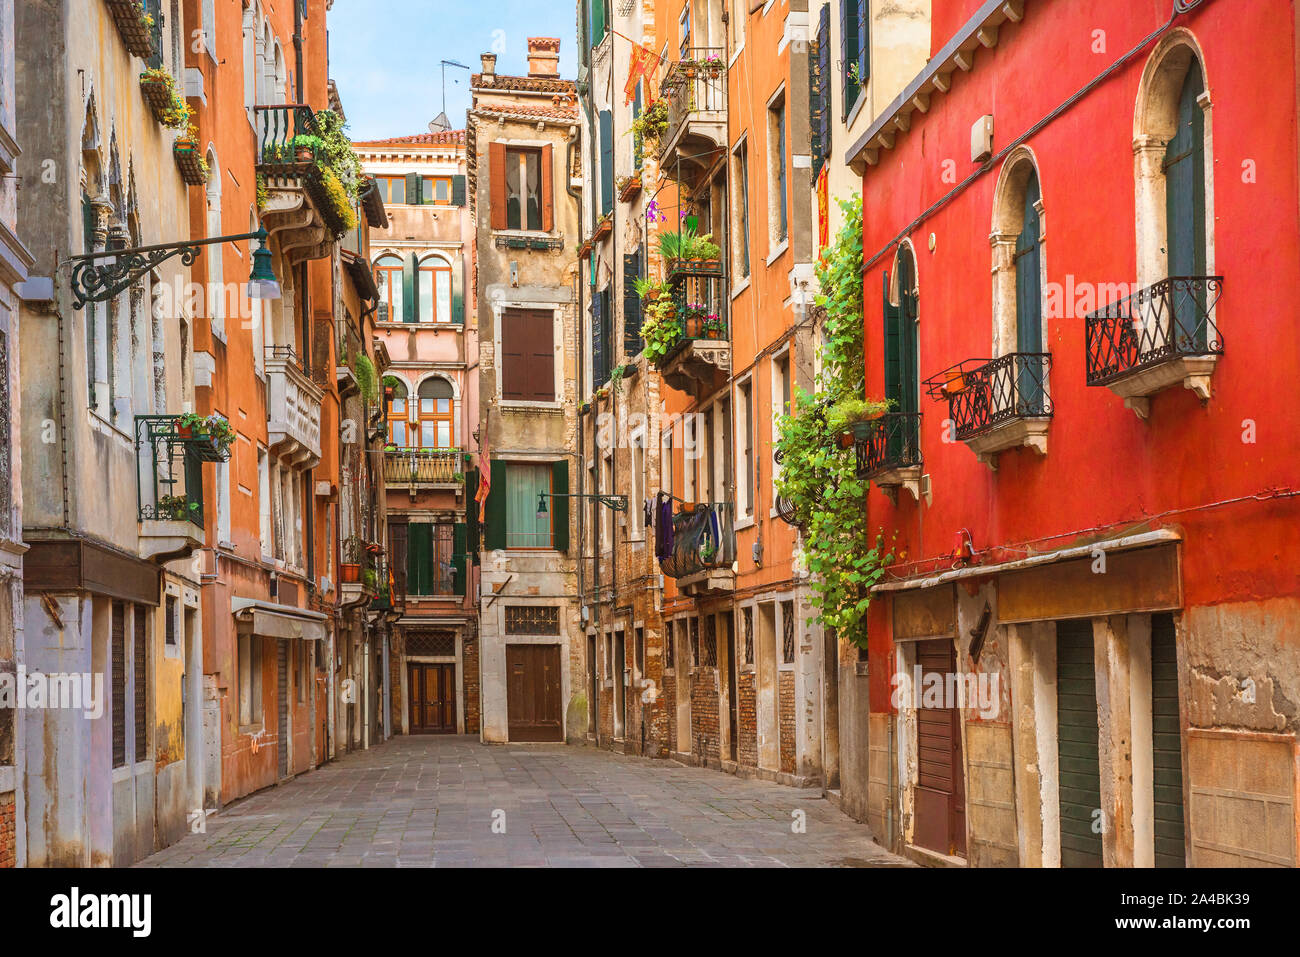 Vista la vecchia strada di Venezia con colorate case in stile veneziano a Venezia, Veneto, Italia Foto Stock